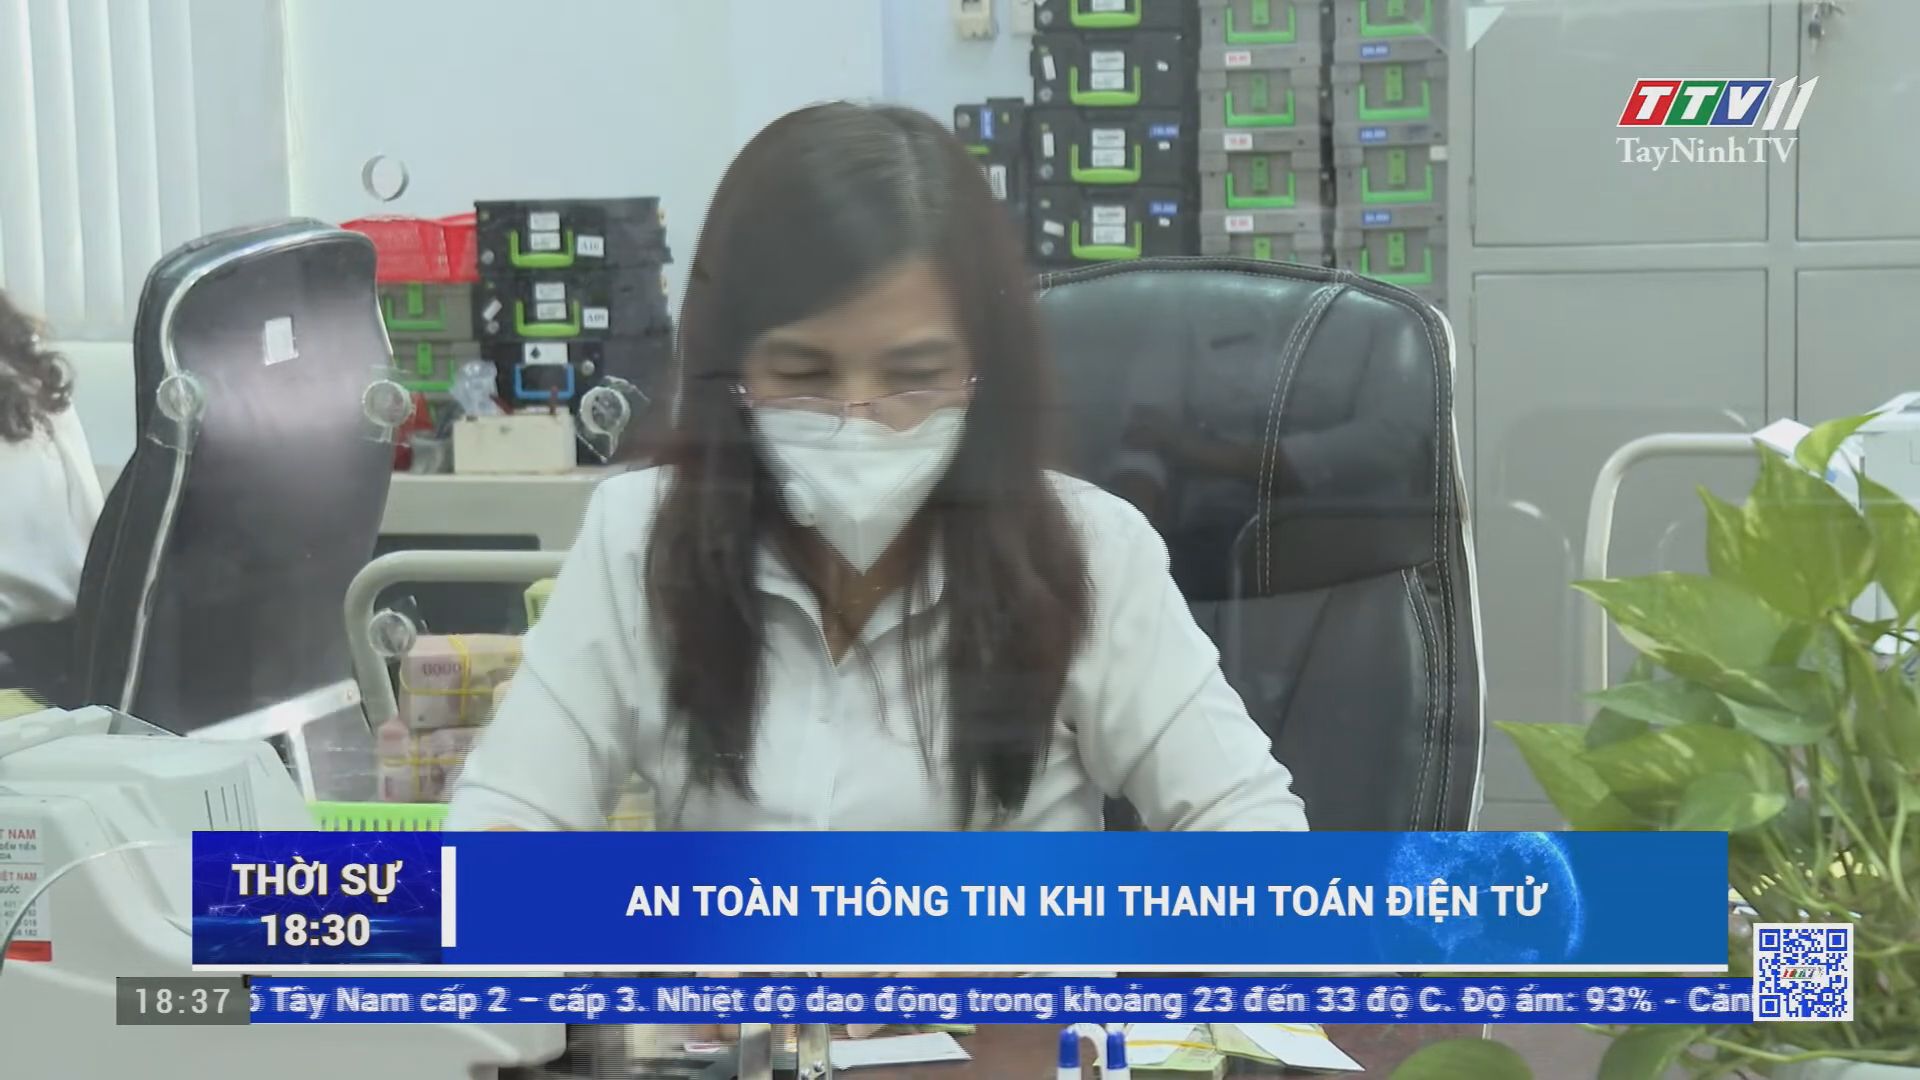 An toàn thông tin khi thanh toán điện tử | TayNinhTV